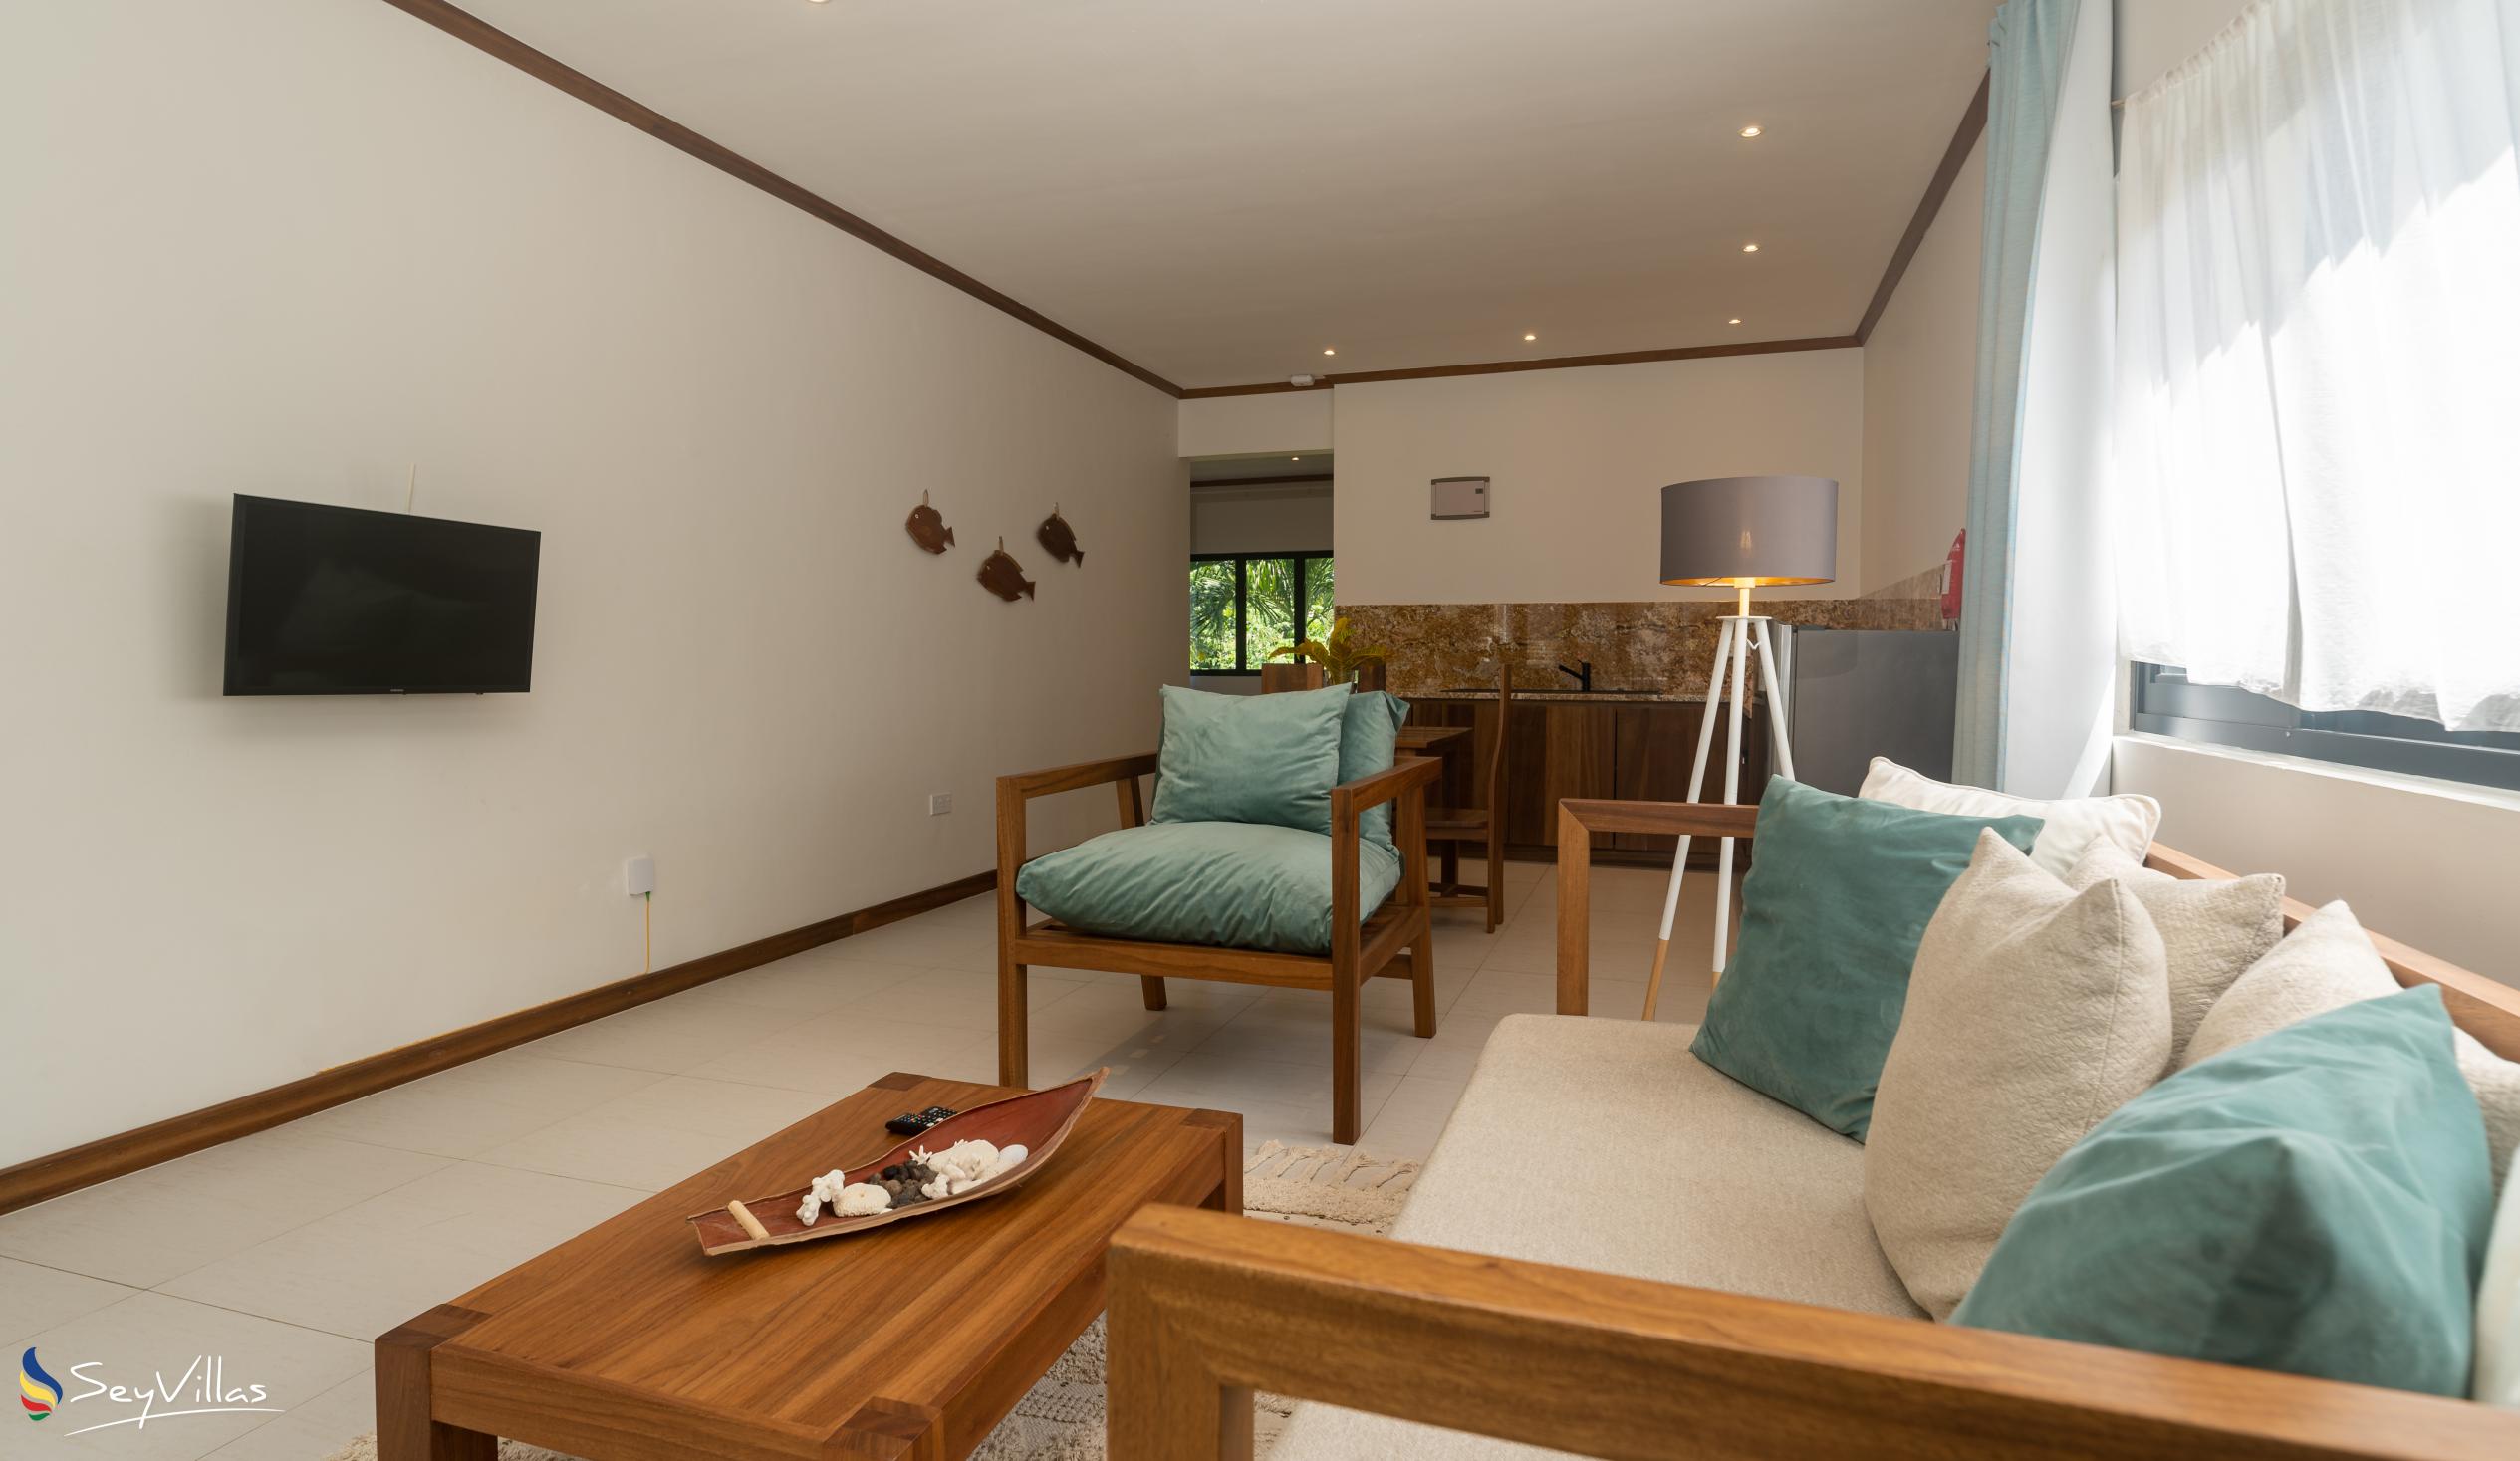 Photo 129: Lodoicea Apartments - Apartment Papay - Mahé (Seychelles)